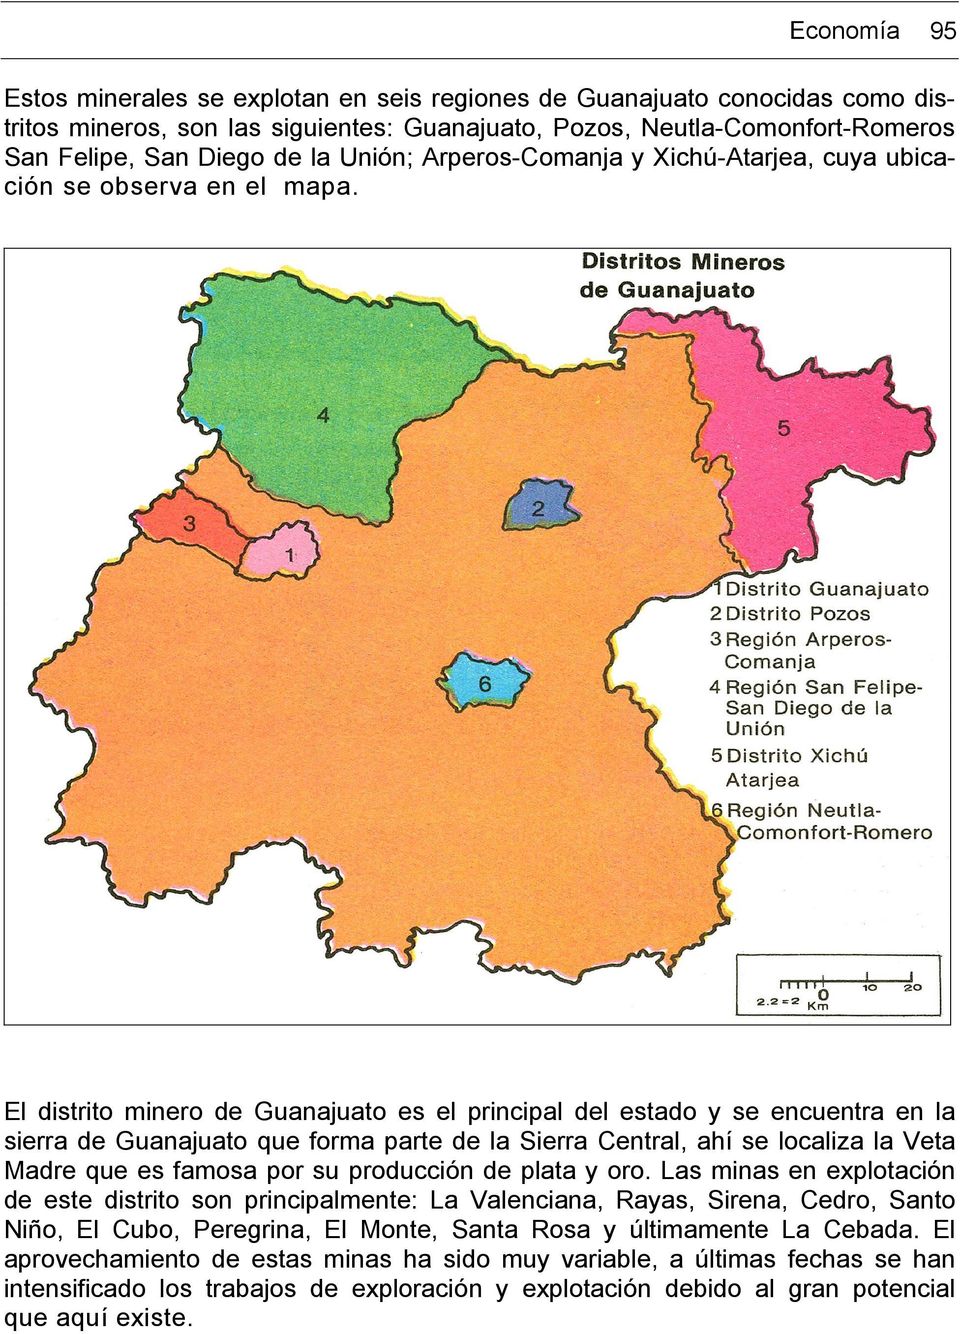 El distrito minero de Guanajuato es el principal del estado y se encuentra en la sierra de Guanajuato que forma parte de la Sierra Central, ahí se localiza la Veta Madre que es famosa por su